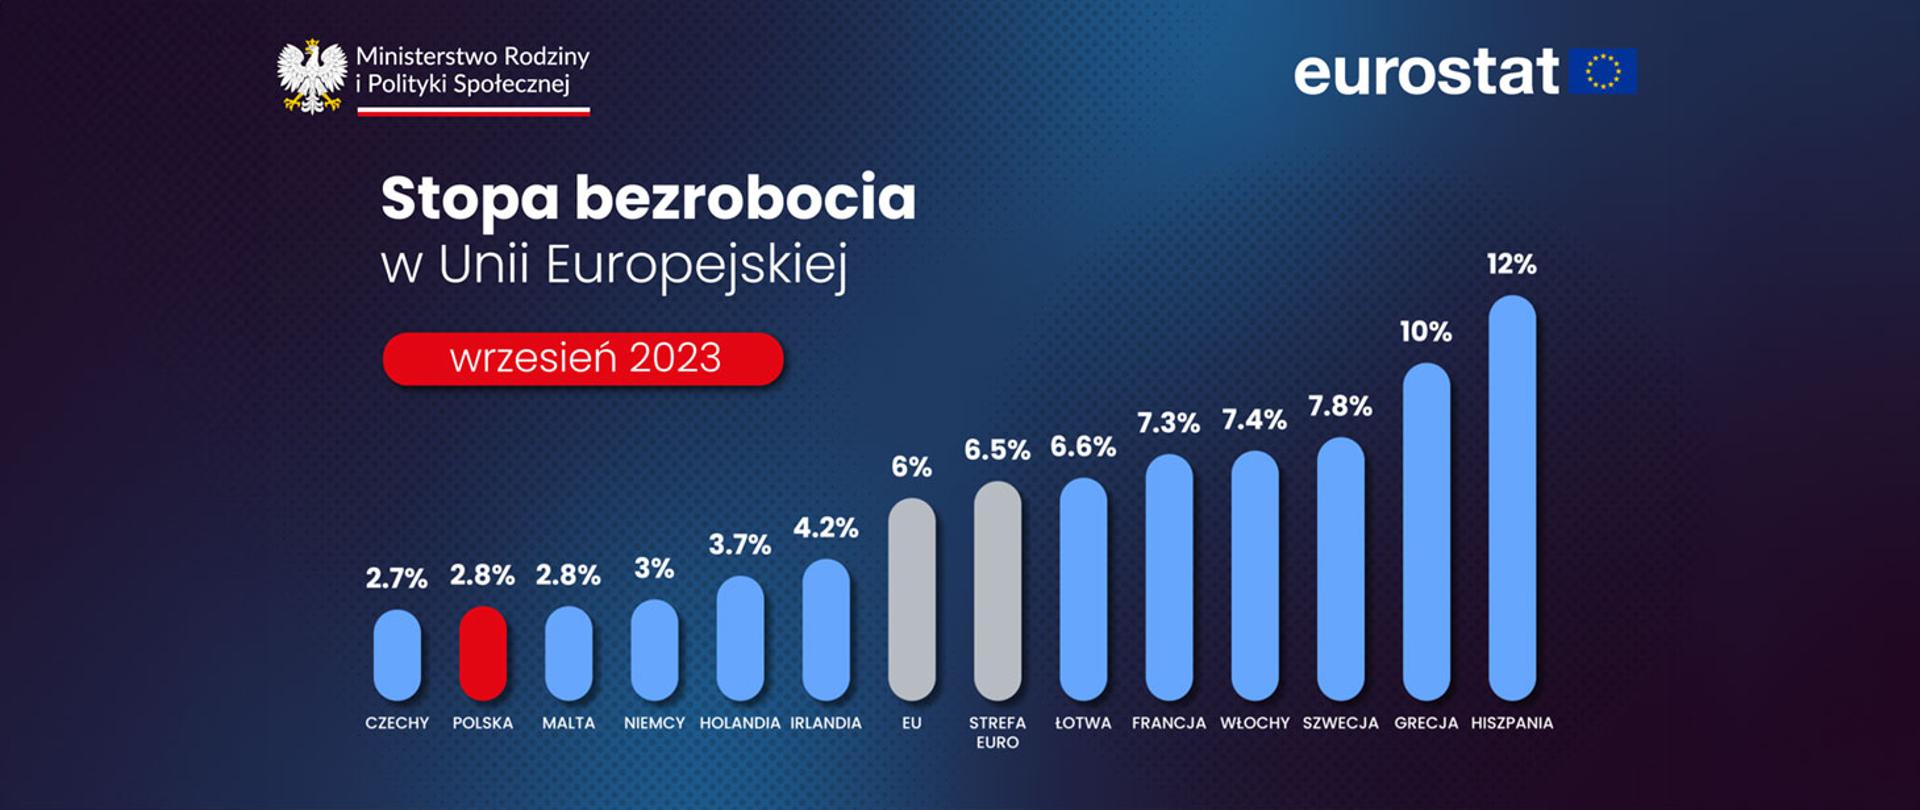 Bezrobocie we wrześniu 2023 według Eurostatu